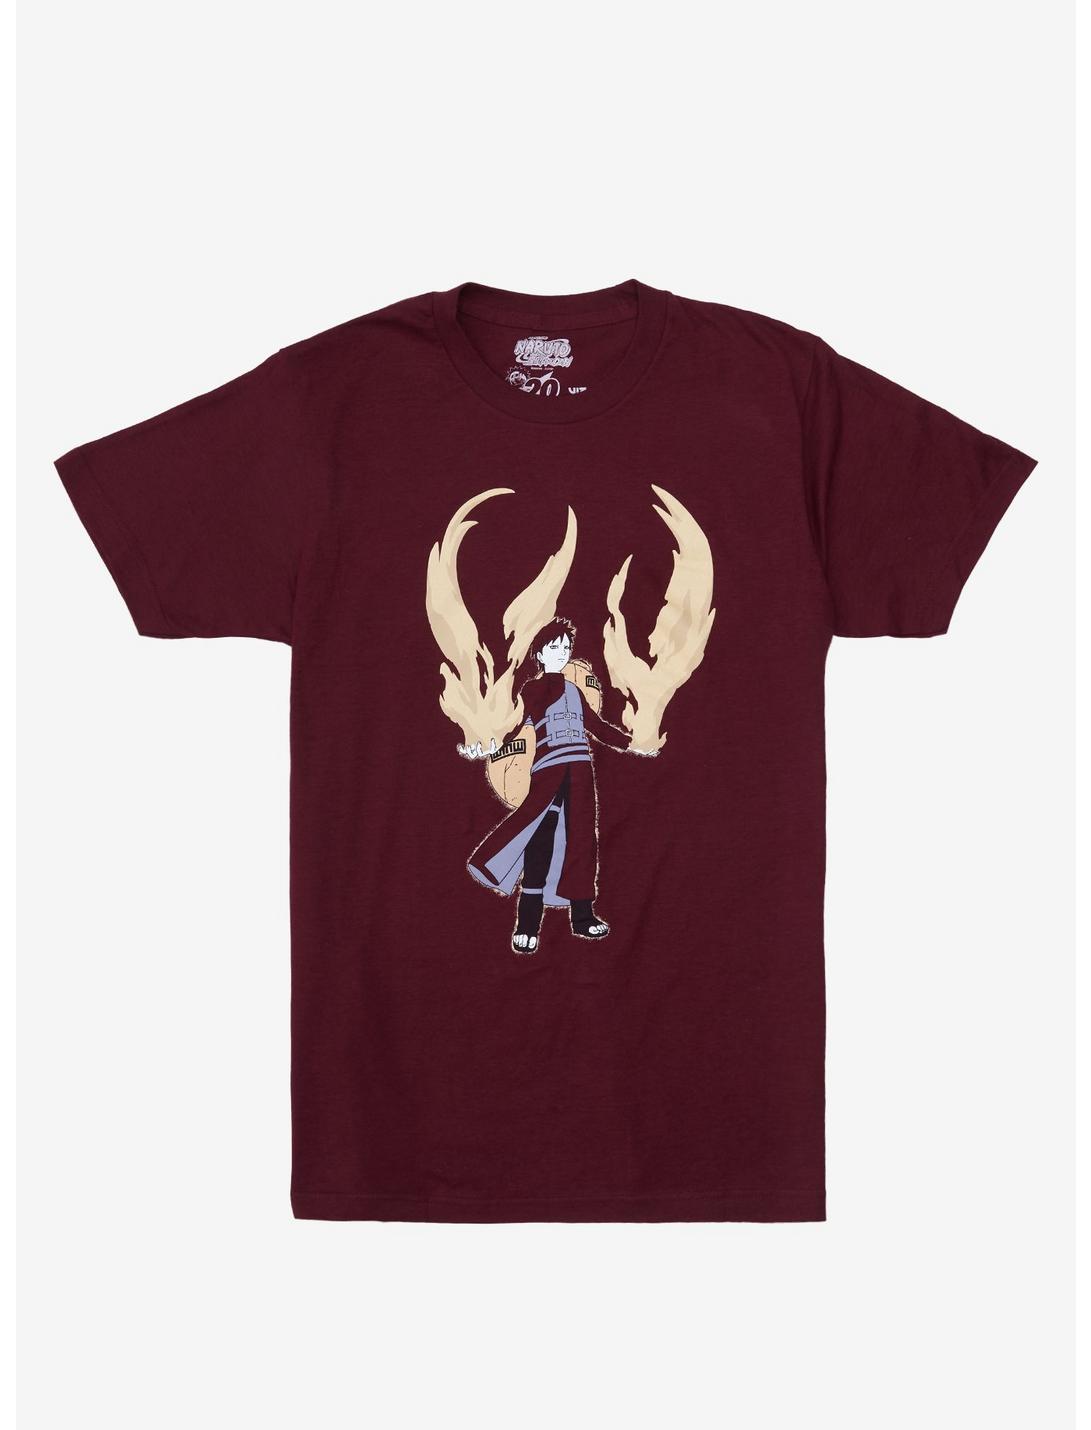 Naruto Shippuden Gaara T-Shirt, MAROON, hi-res